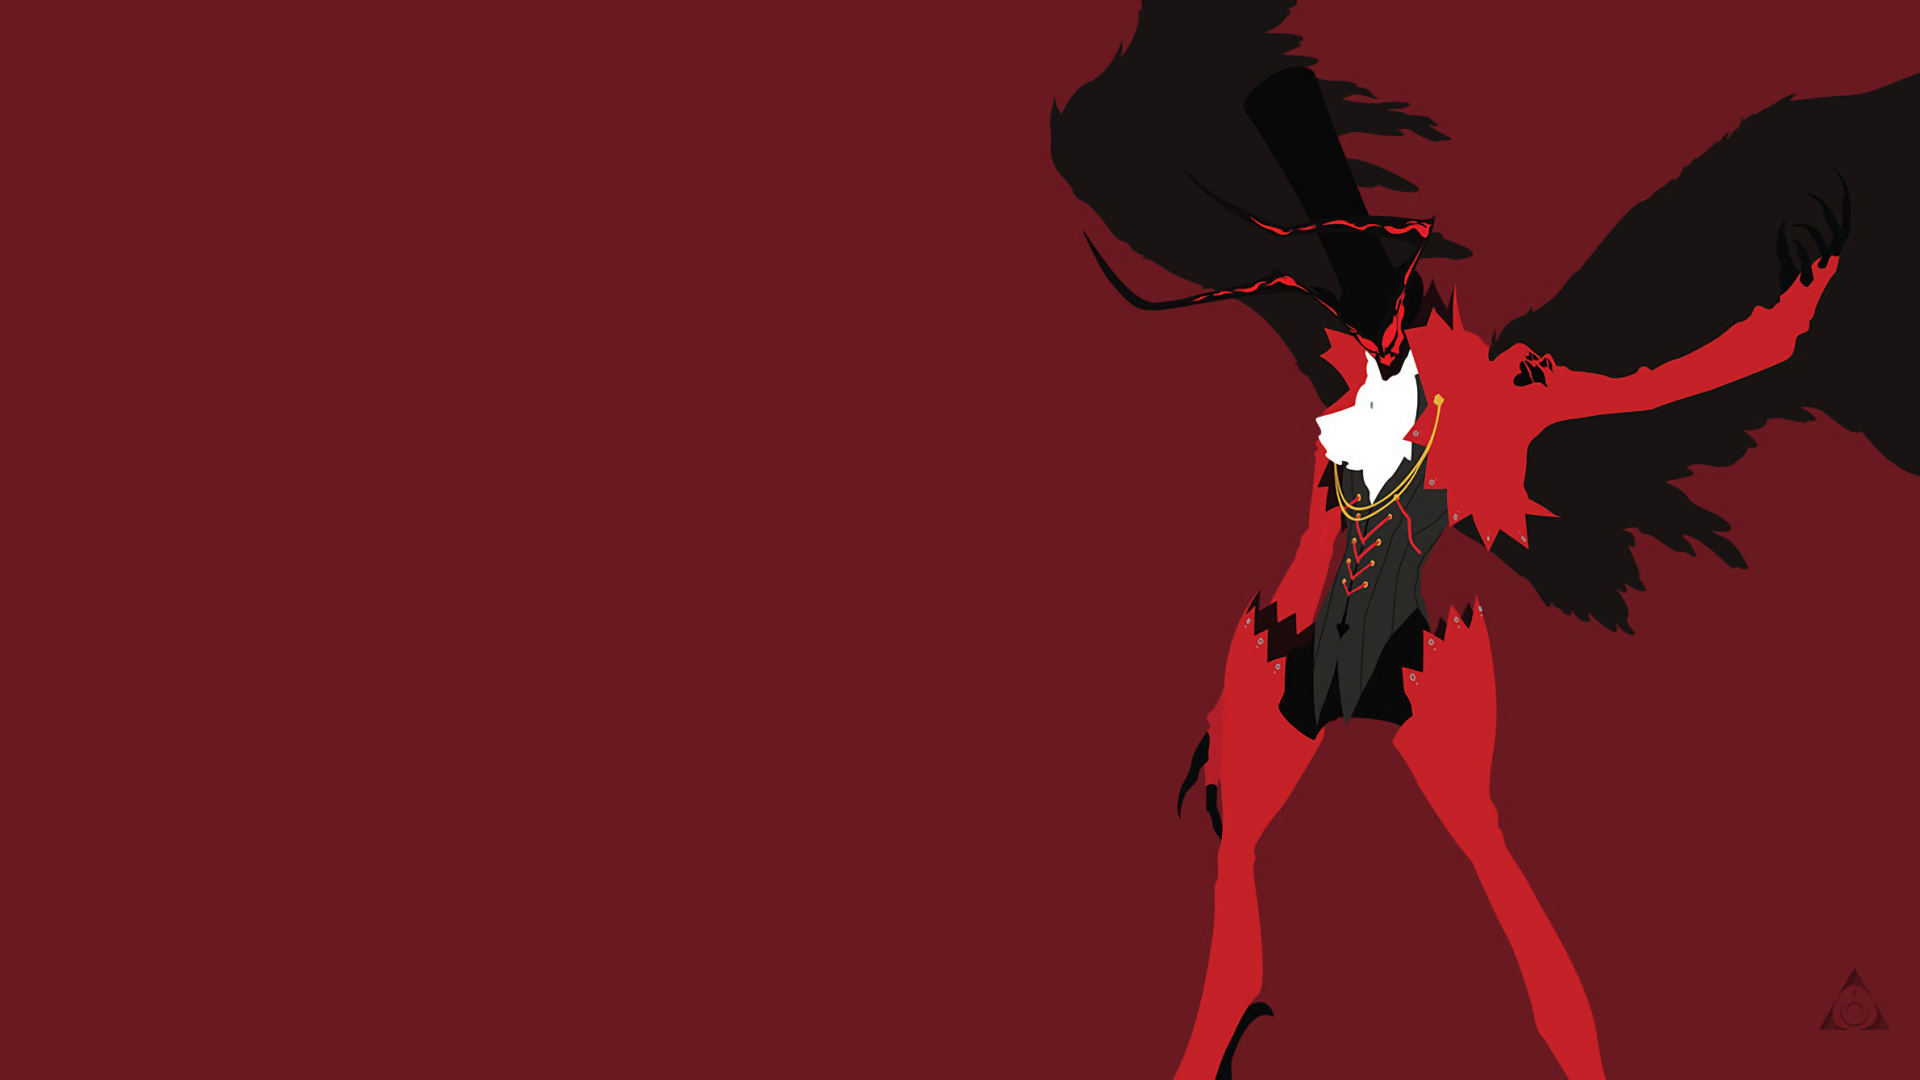 persona 5 fondo de pantalla para iphone,rojo,personaje de ficción,diseño gráfico,ala,ilustración